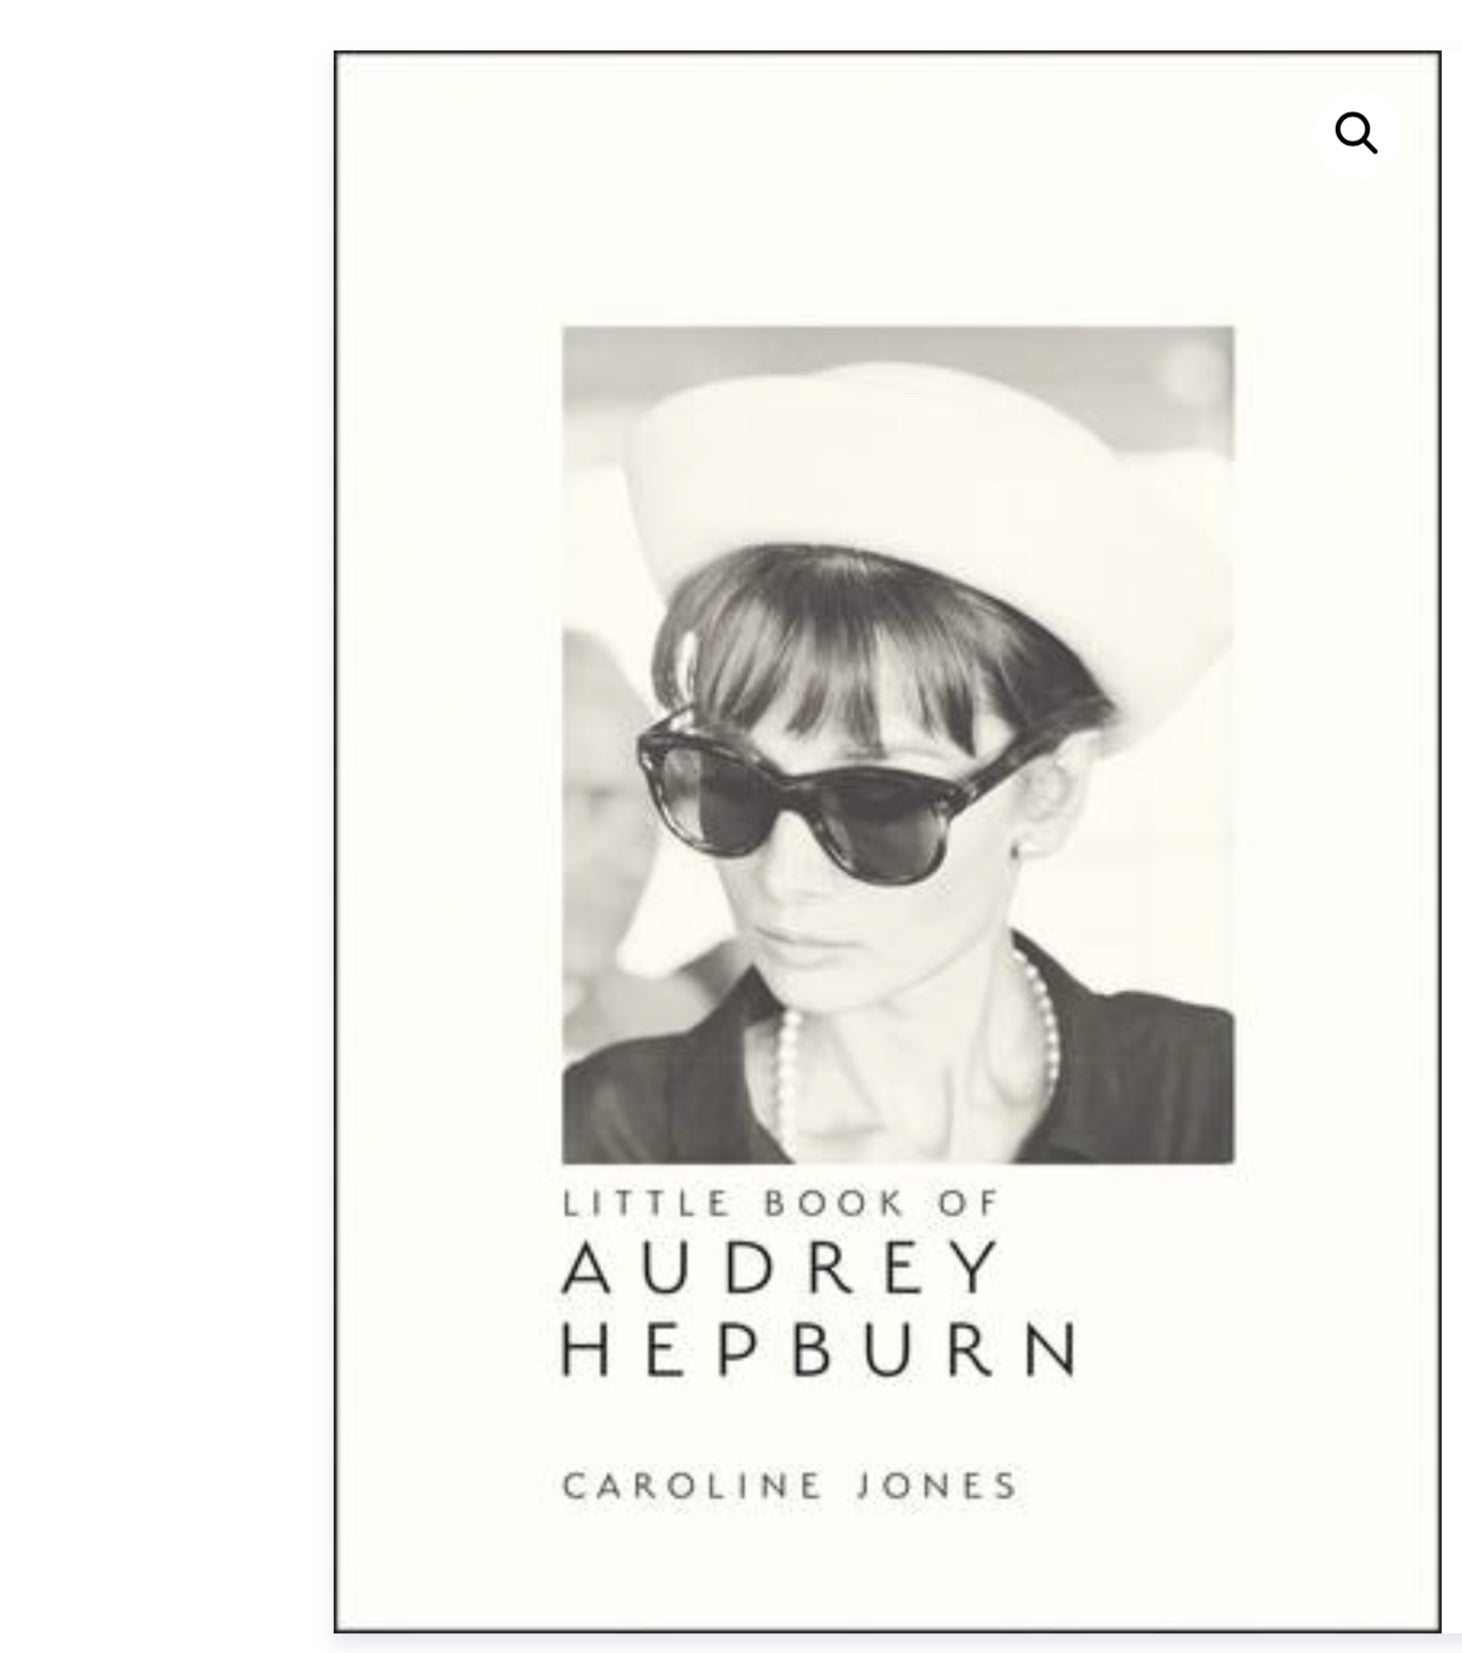 LITTLE BOOK OF AUDREY HEPBURN